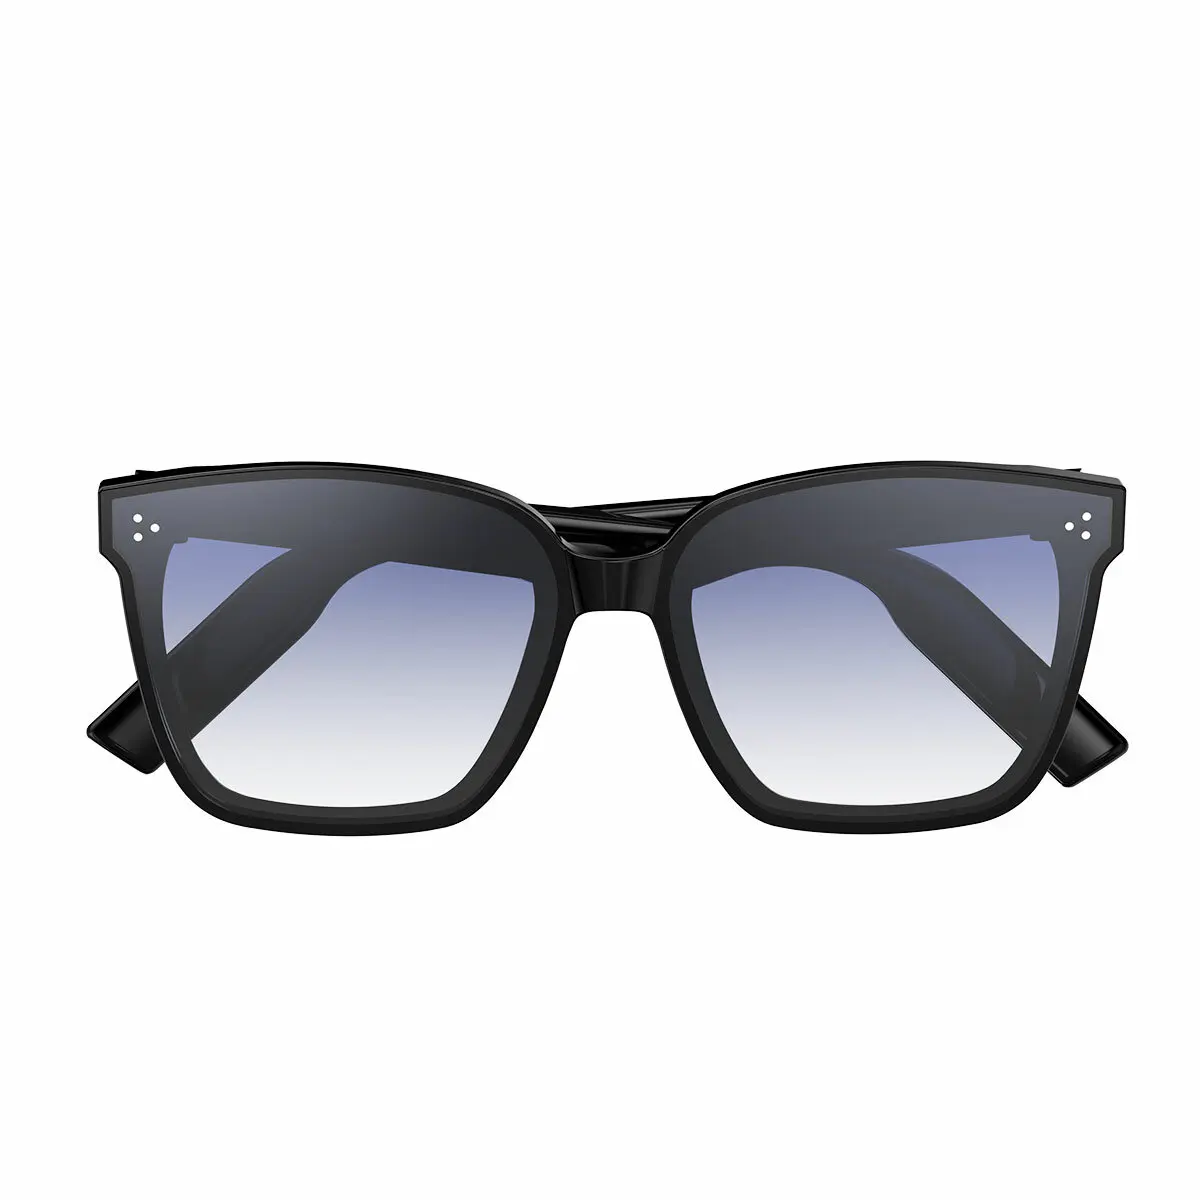 저렴한 스마트 안경 음악 플레이어 전화 음성 도우미 블루투스 5.0 지능 자외선 차단 선글라스